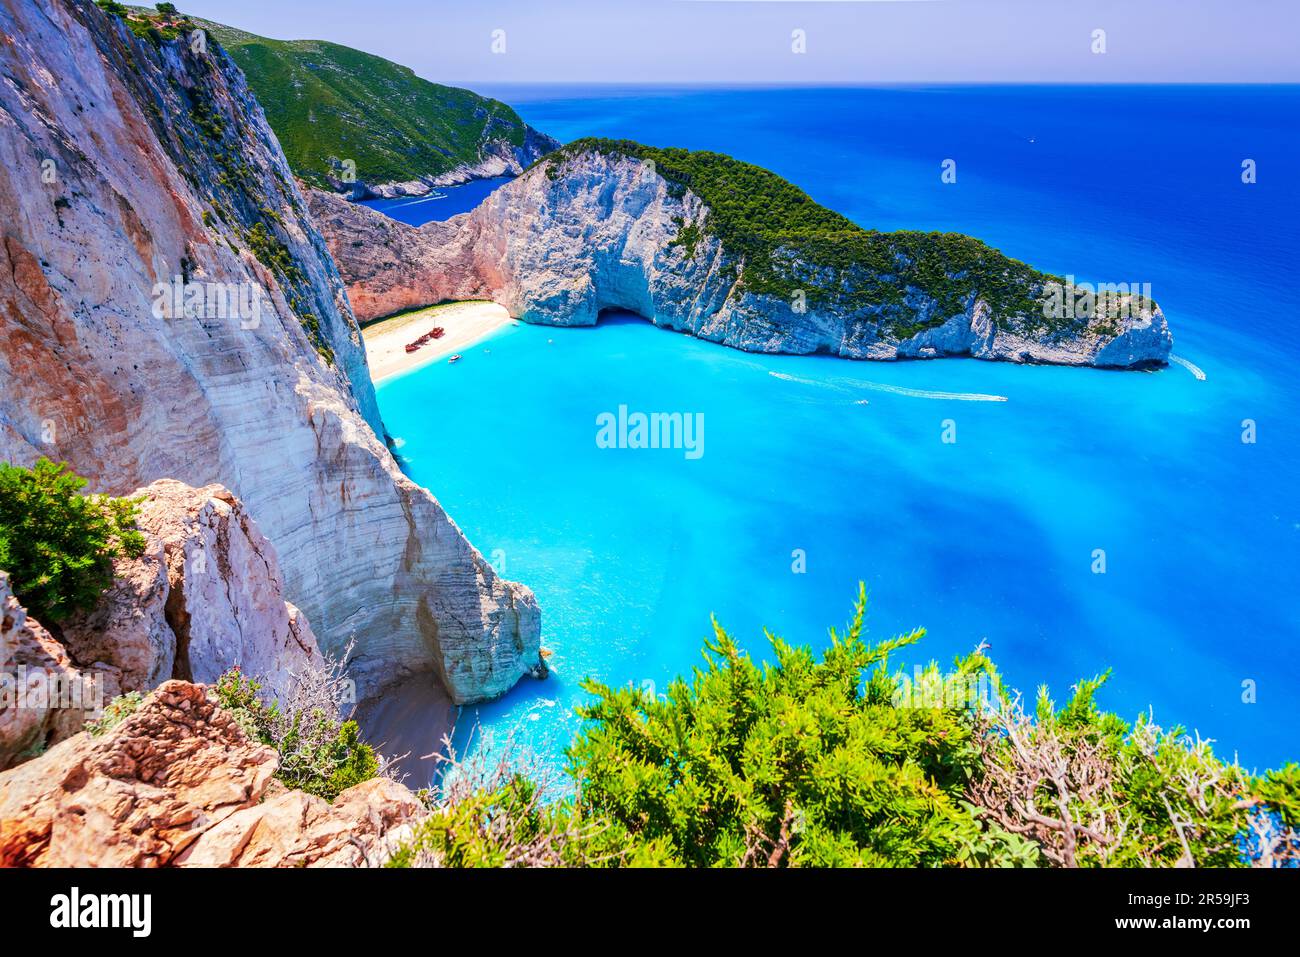 Zakynthos, Grèce. Célèbre plage de Navagio, paysage de la mer Ionienne, îles grecques. Banque D'Images